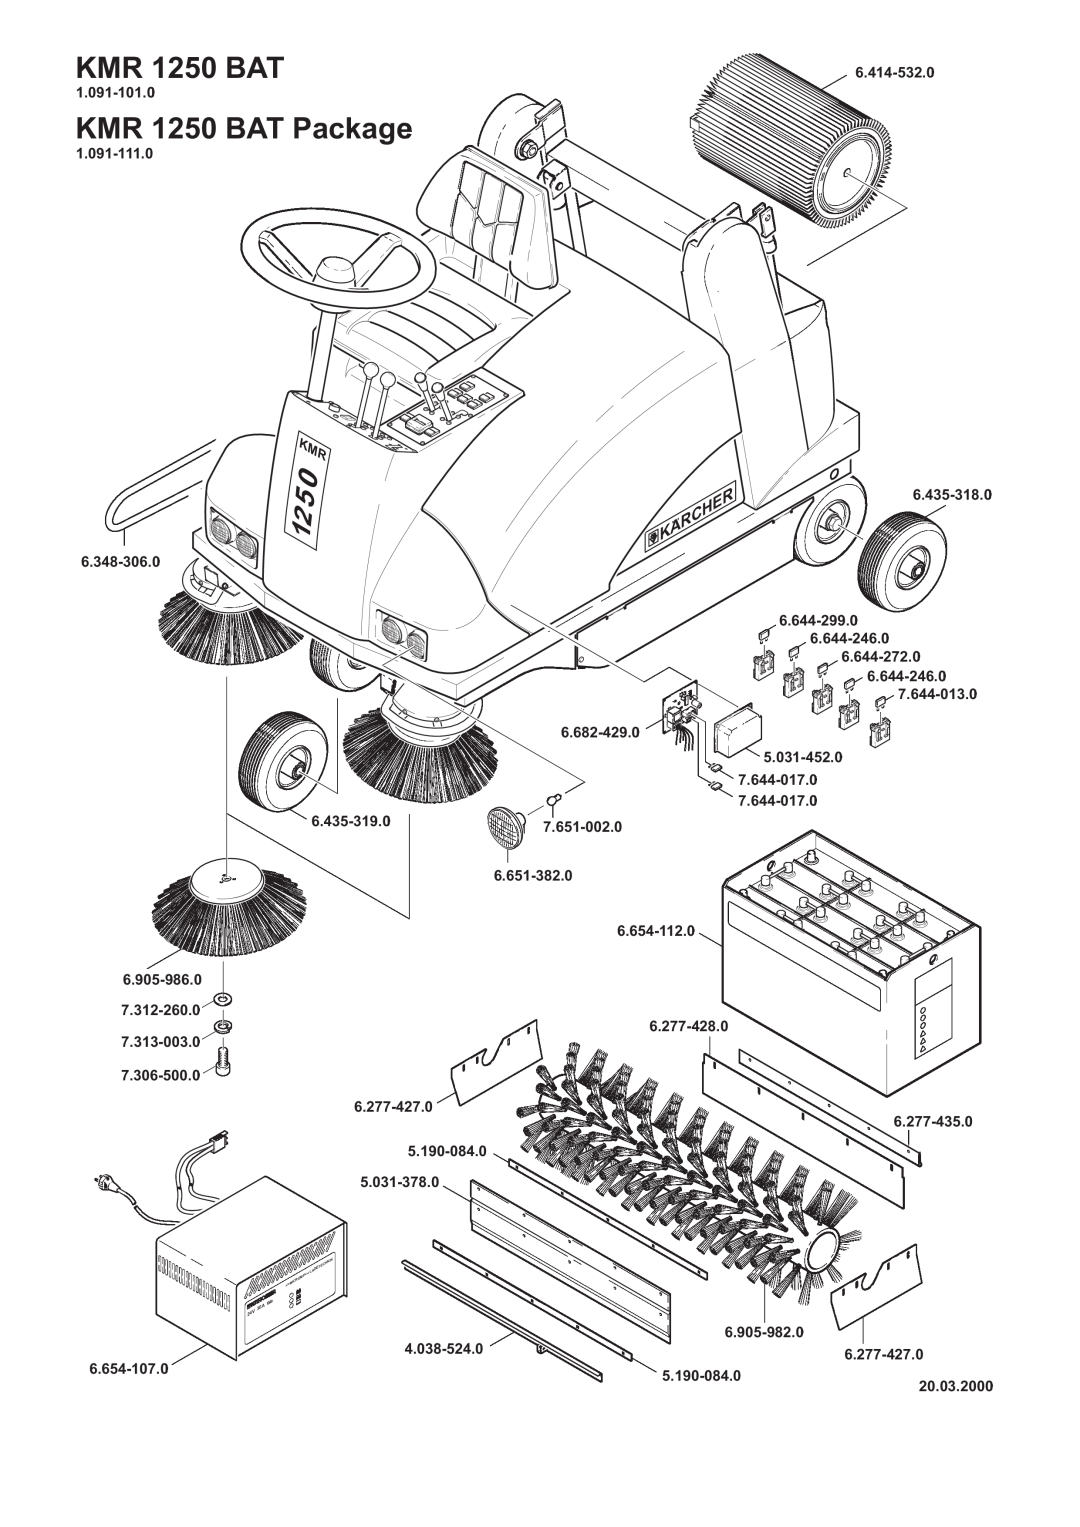 Karcher manual KMR 1250 BAT Package, Karcher 